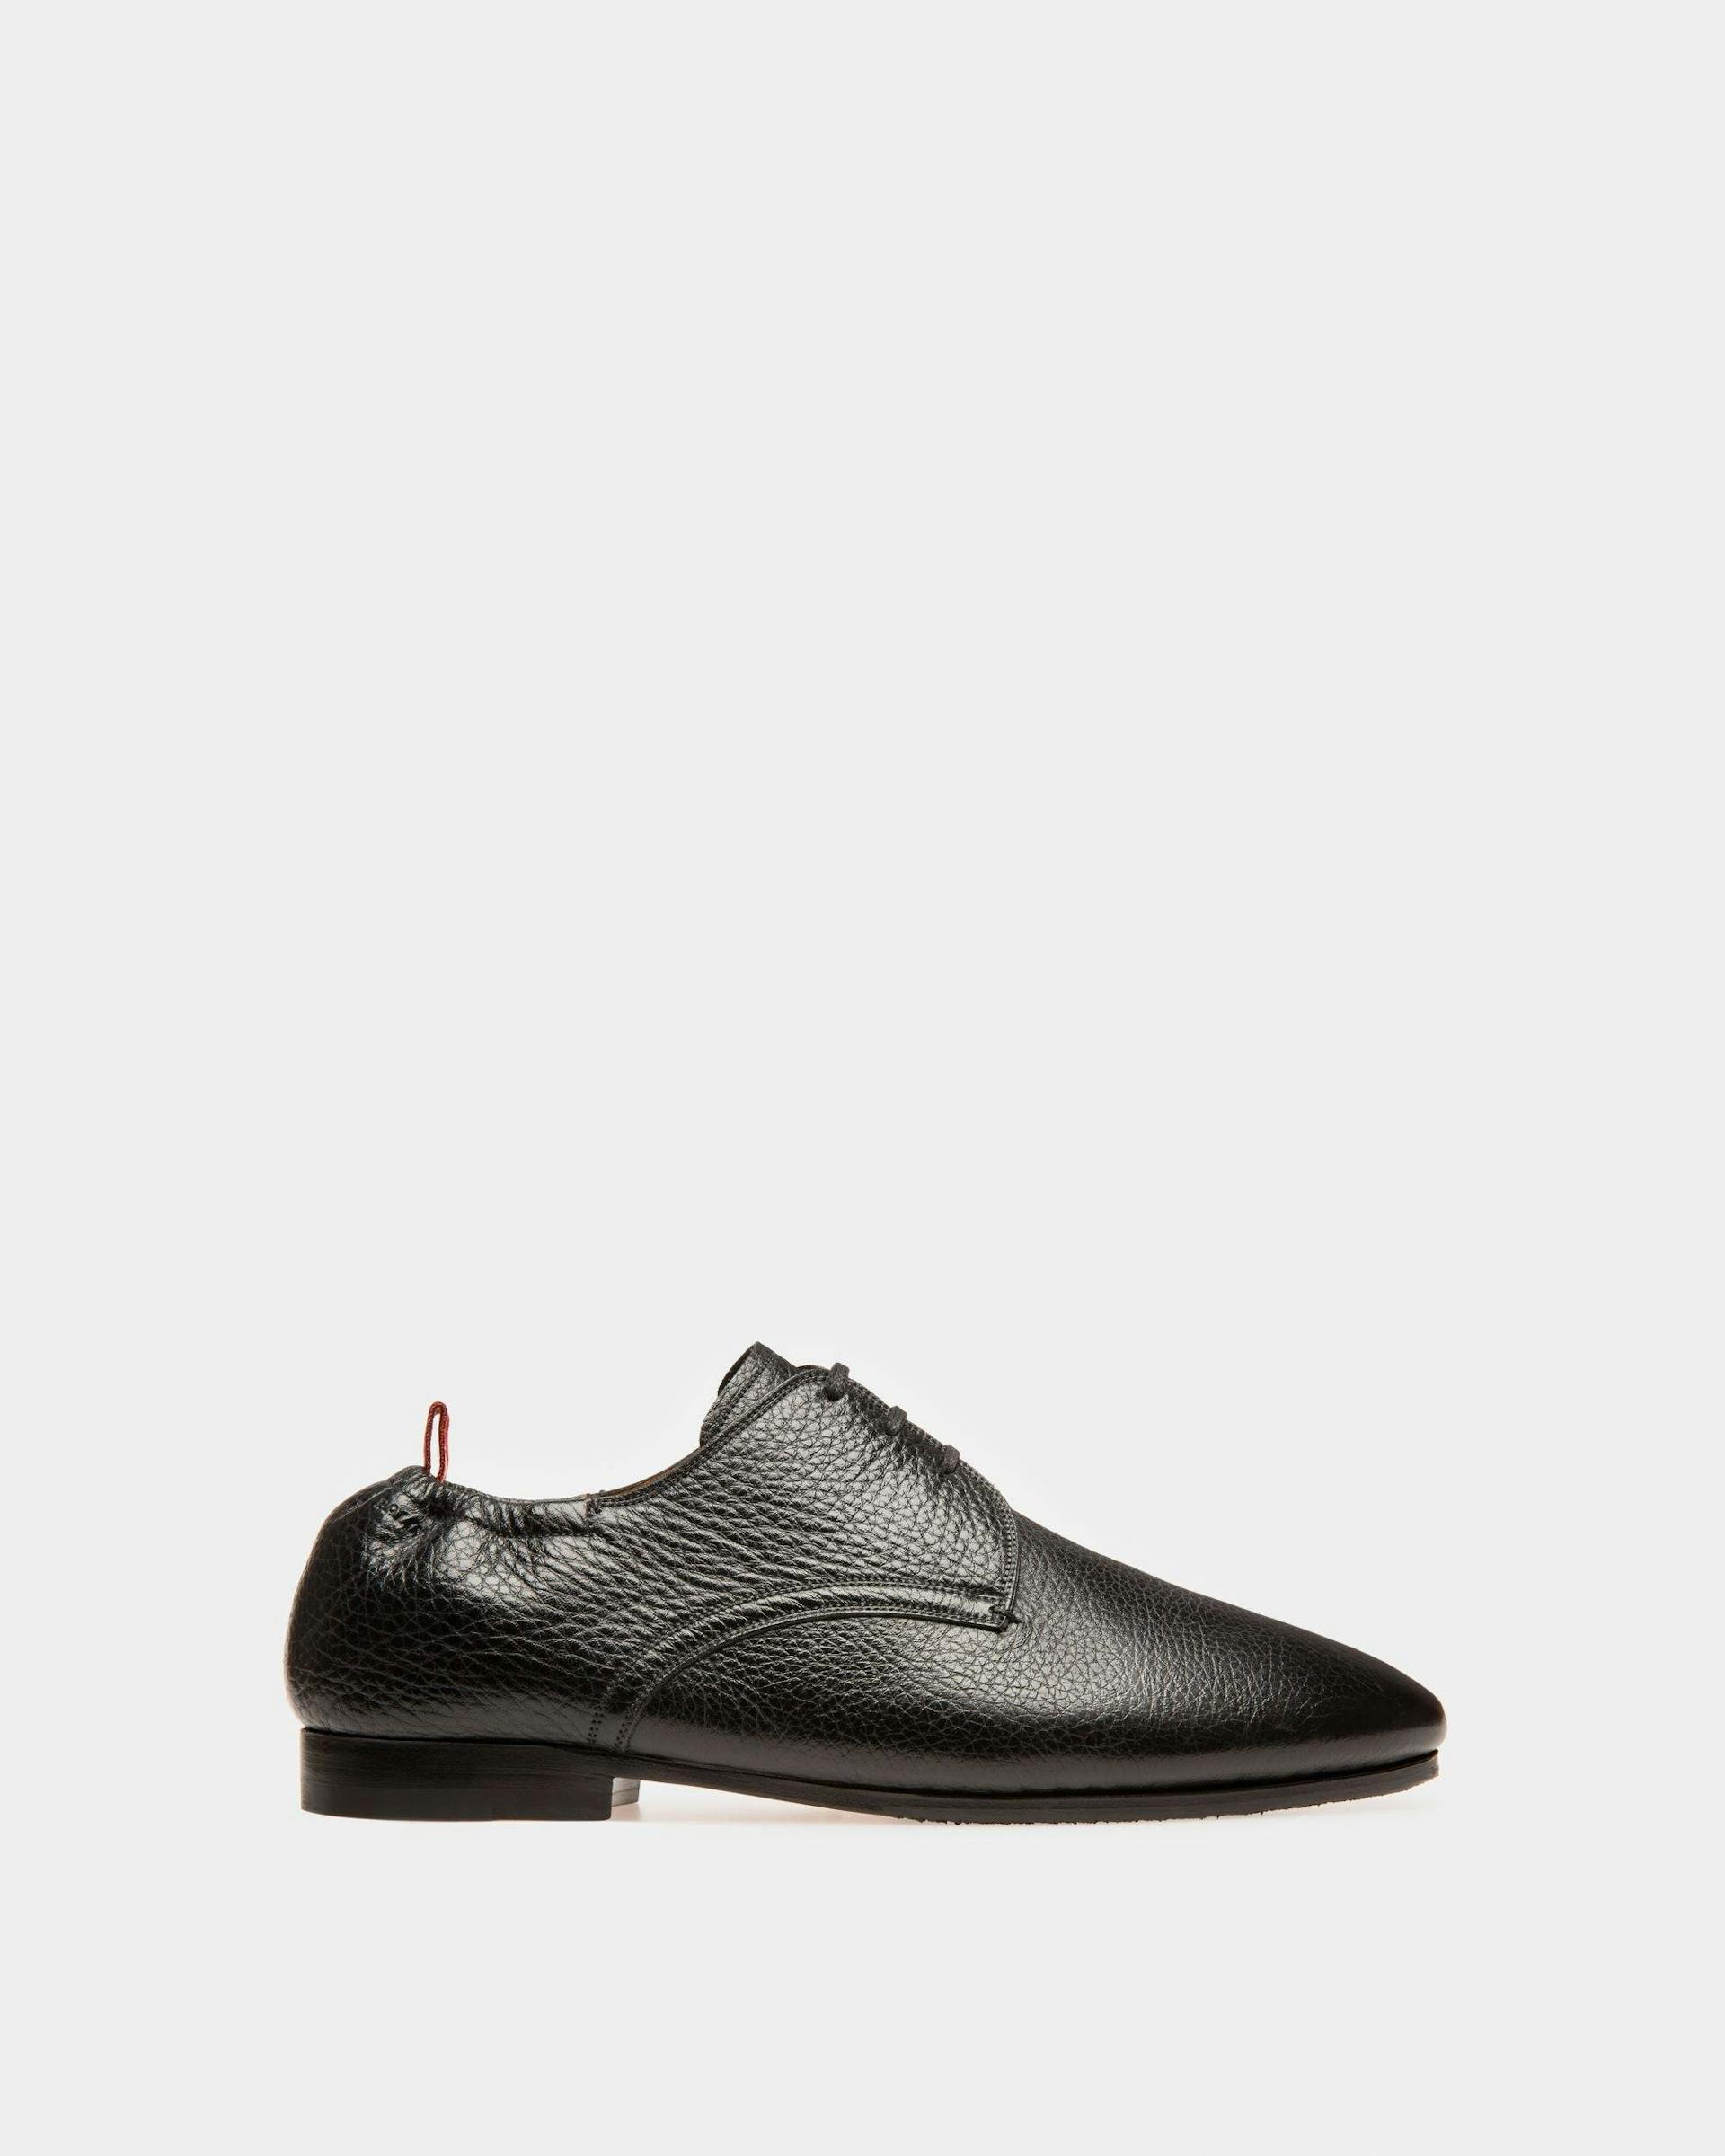 Plizard Leather Derby Shoes In Black - Men's - Bally - 01